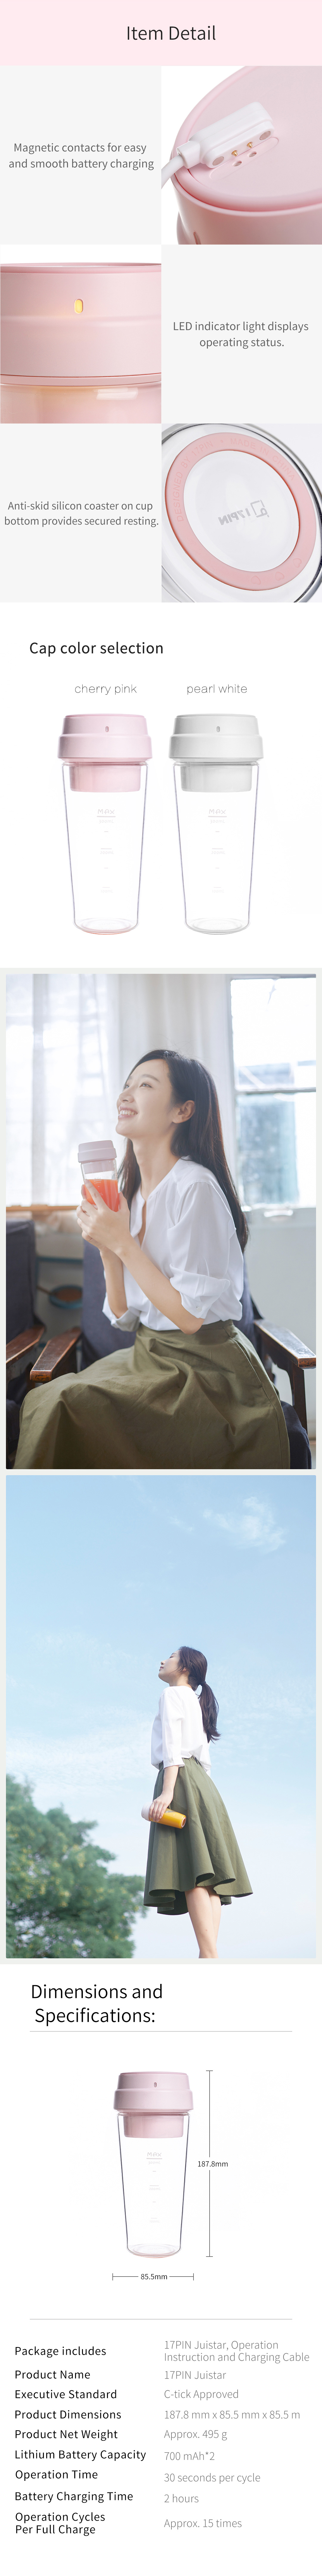 Xiaomi 17Pin Juistar Portable Juice Blender